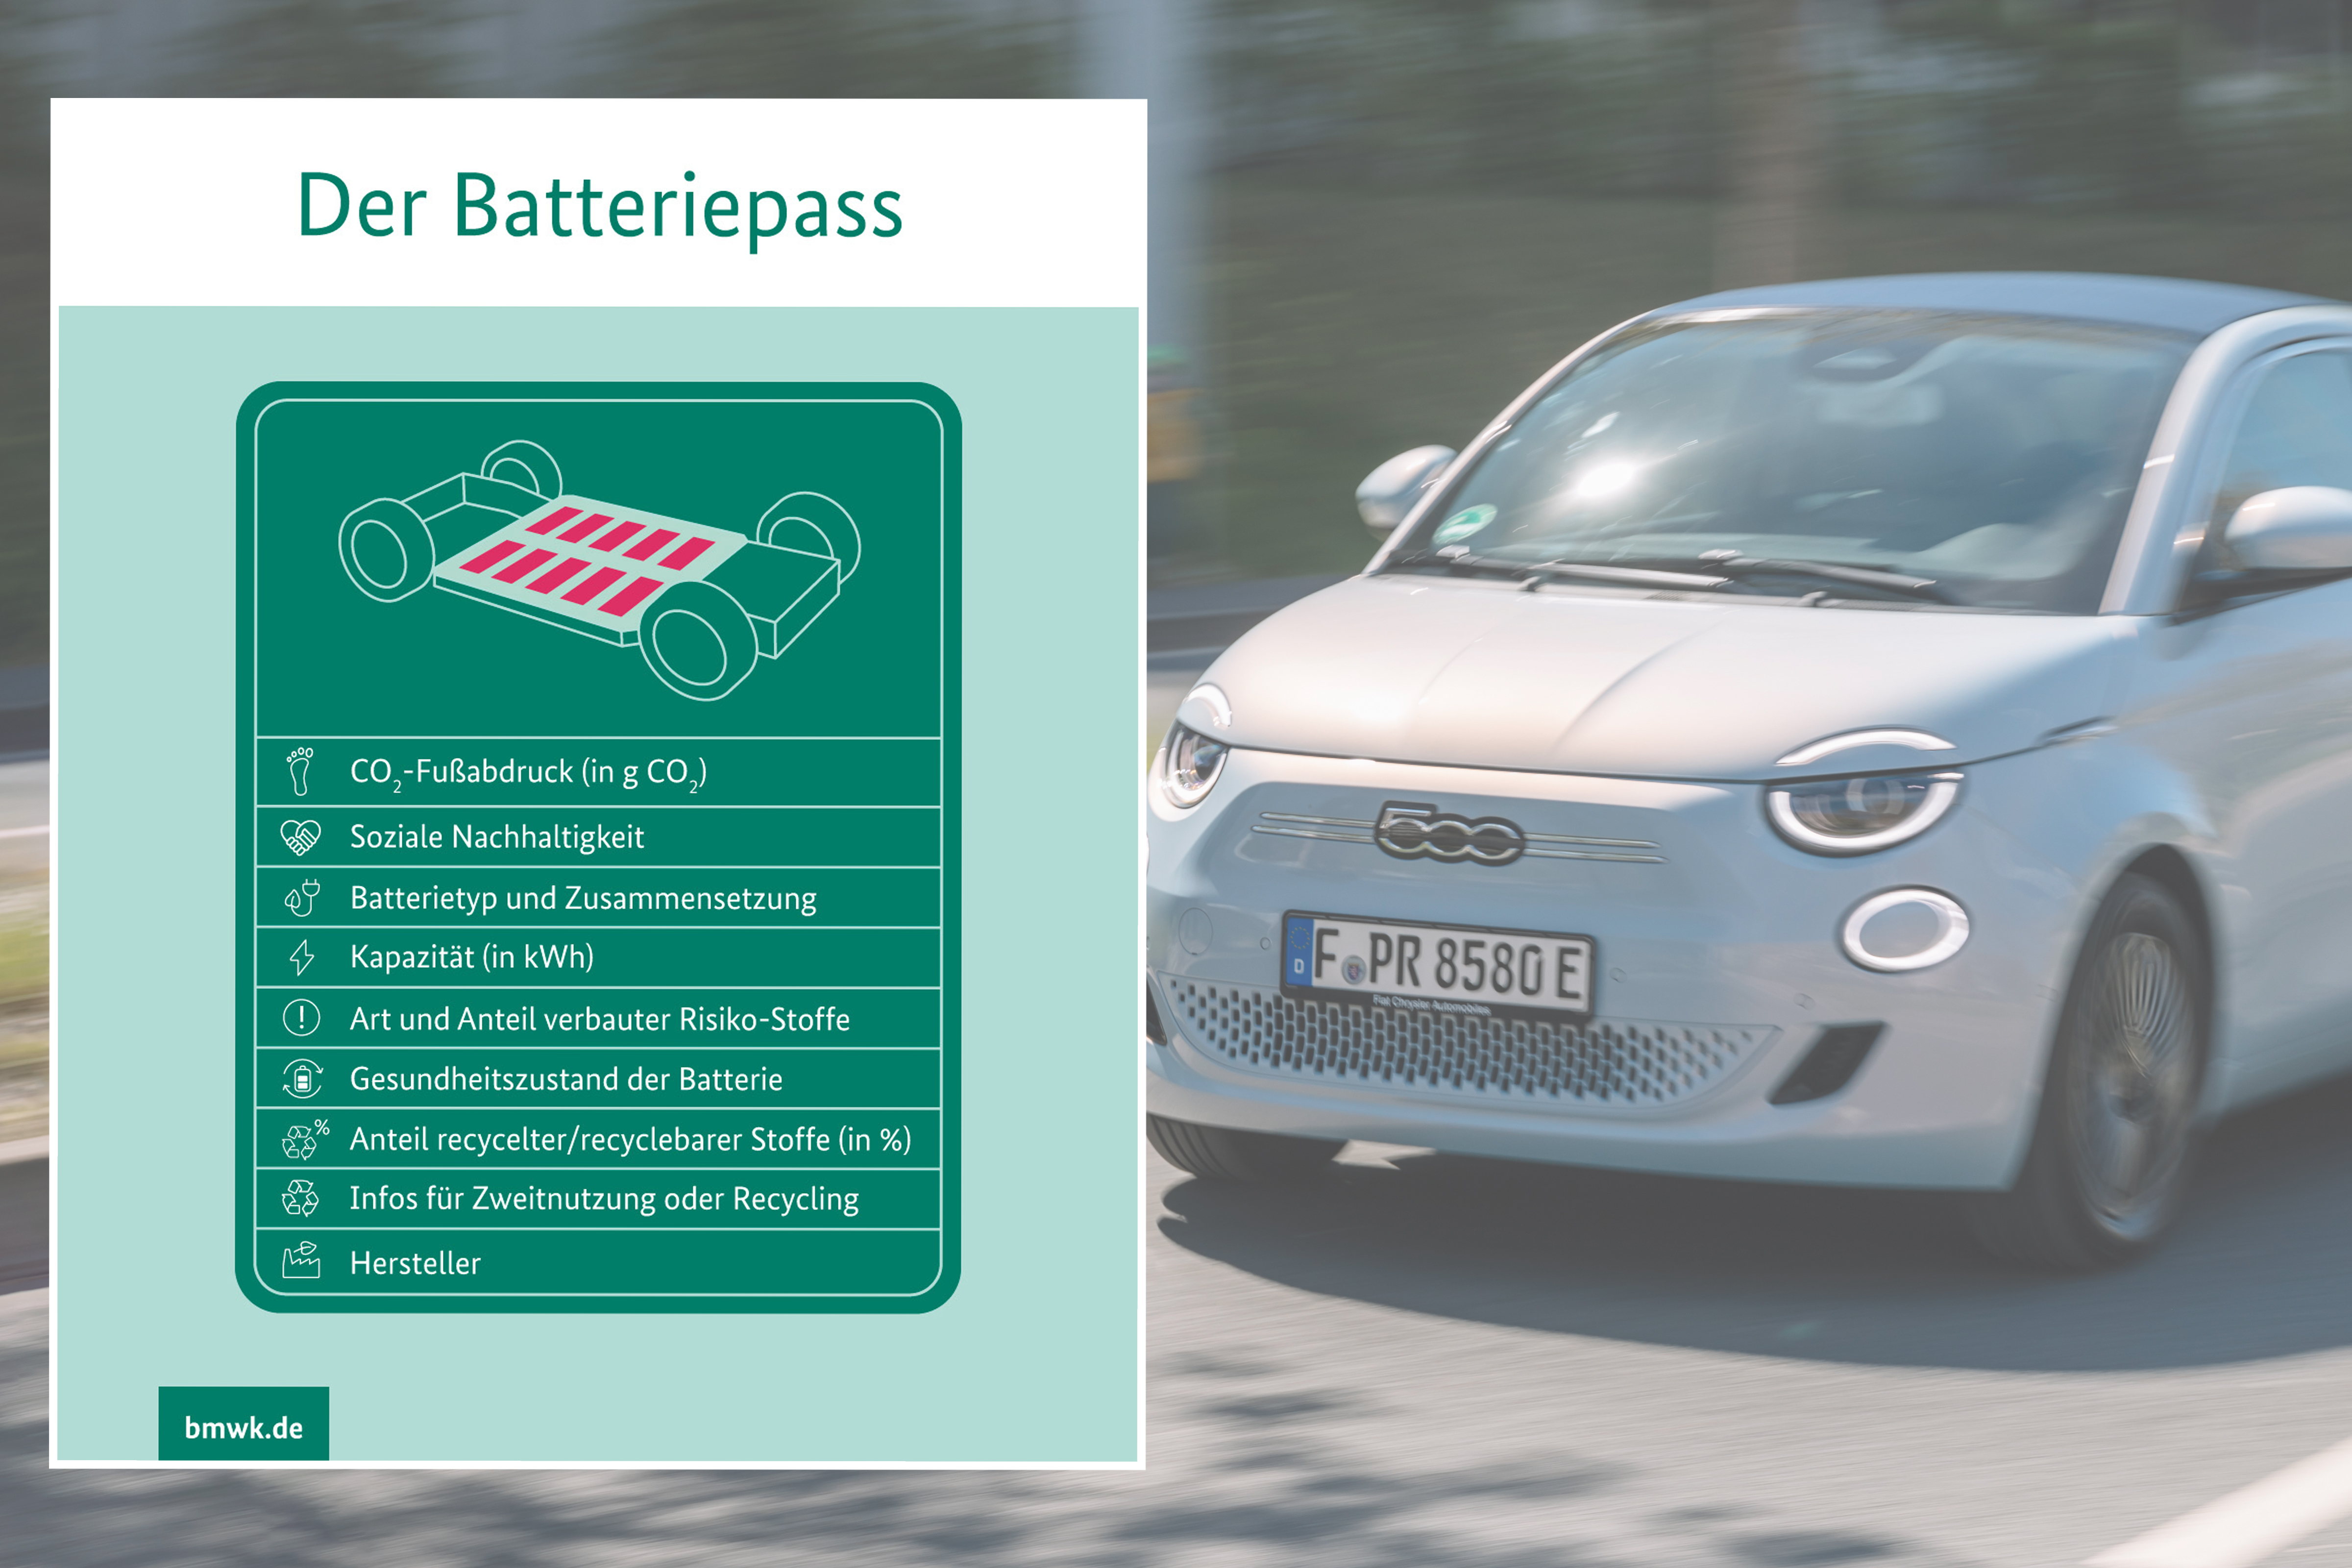 Gebrauchter Akku: beim E-Auto-Kauf vom Batteriepass profitieren - AUTO BILD